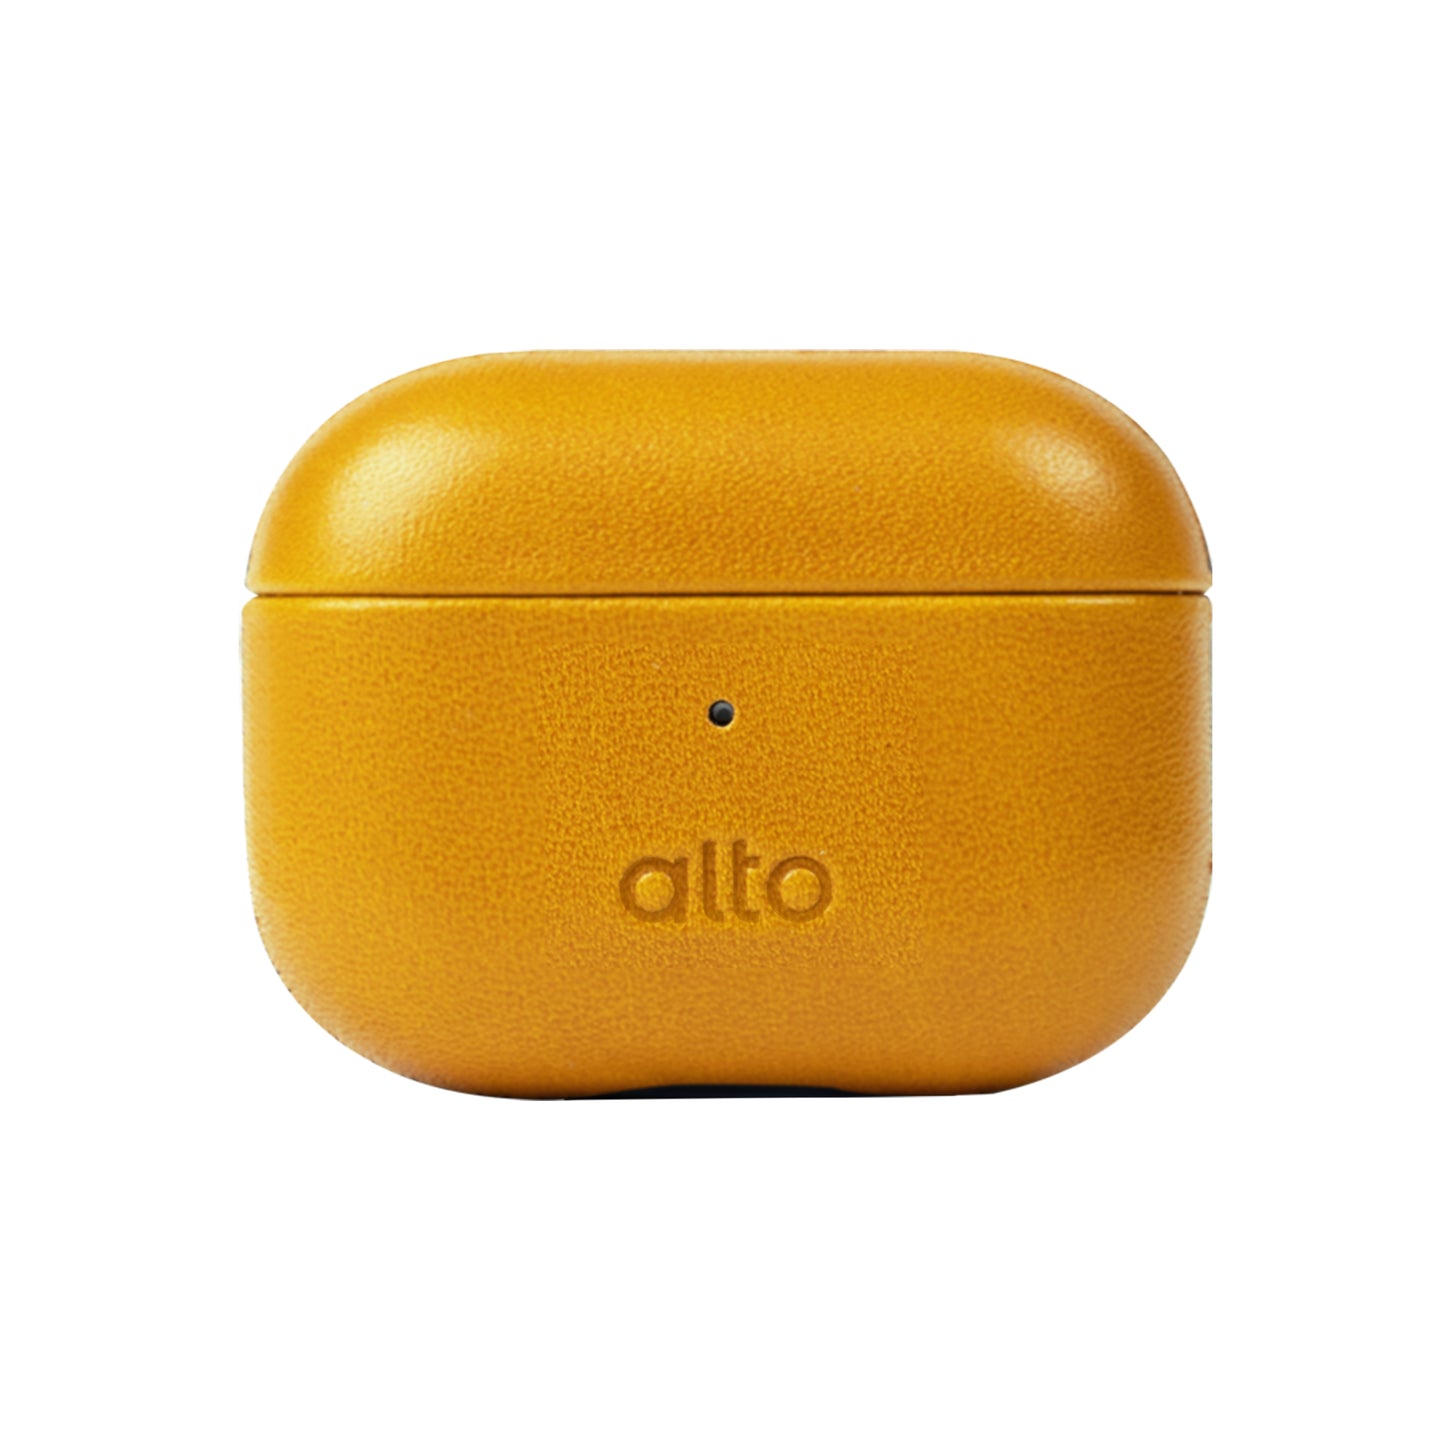 alto Pro 2 Case – スマホケースショップ